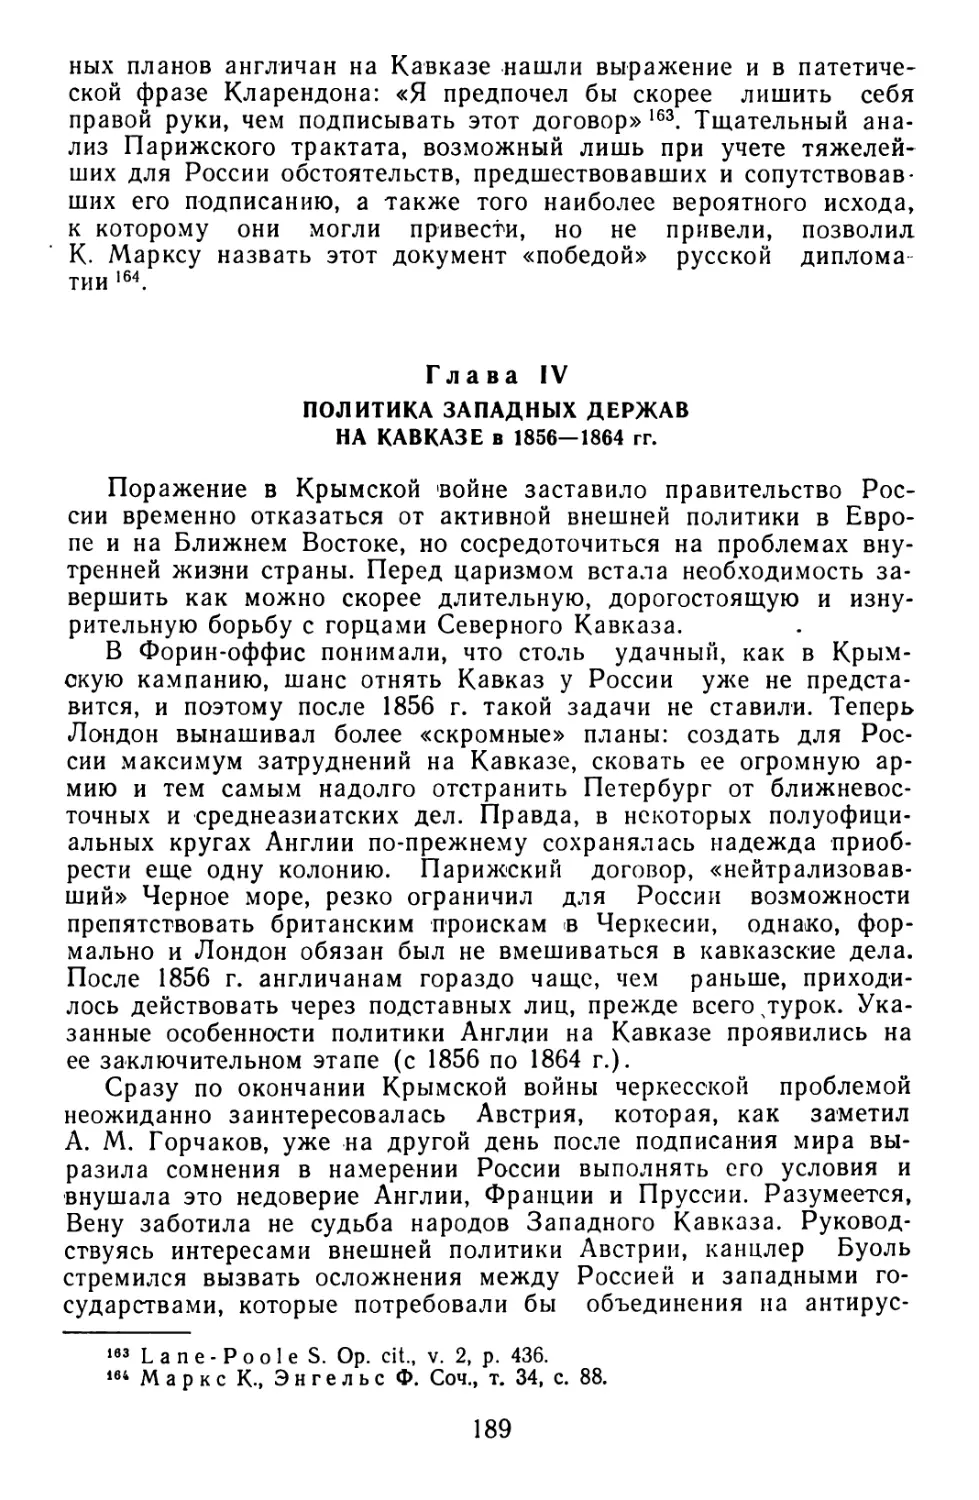 Глава IV. Политика западных держав на Кавказе в 1856—1864 гг.